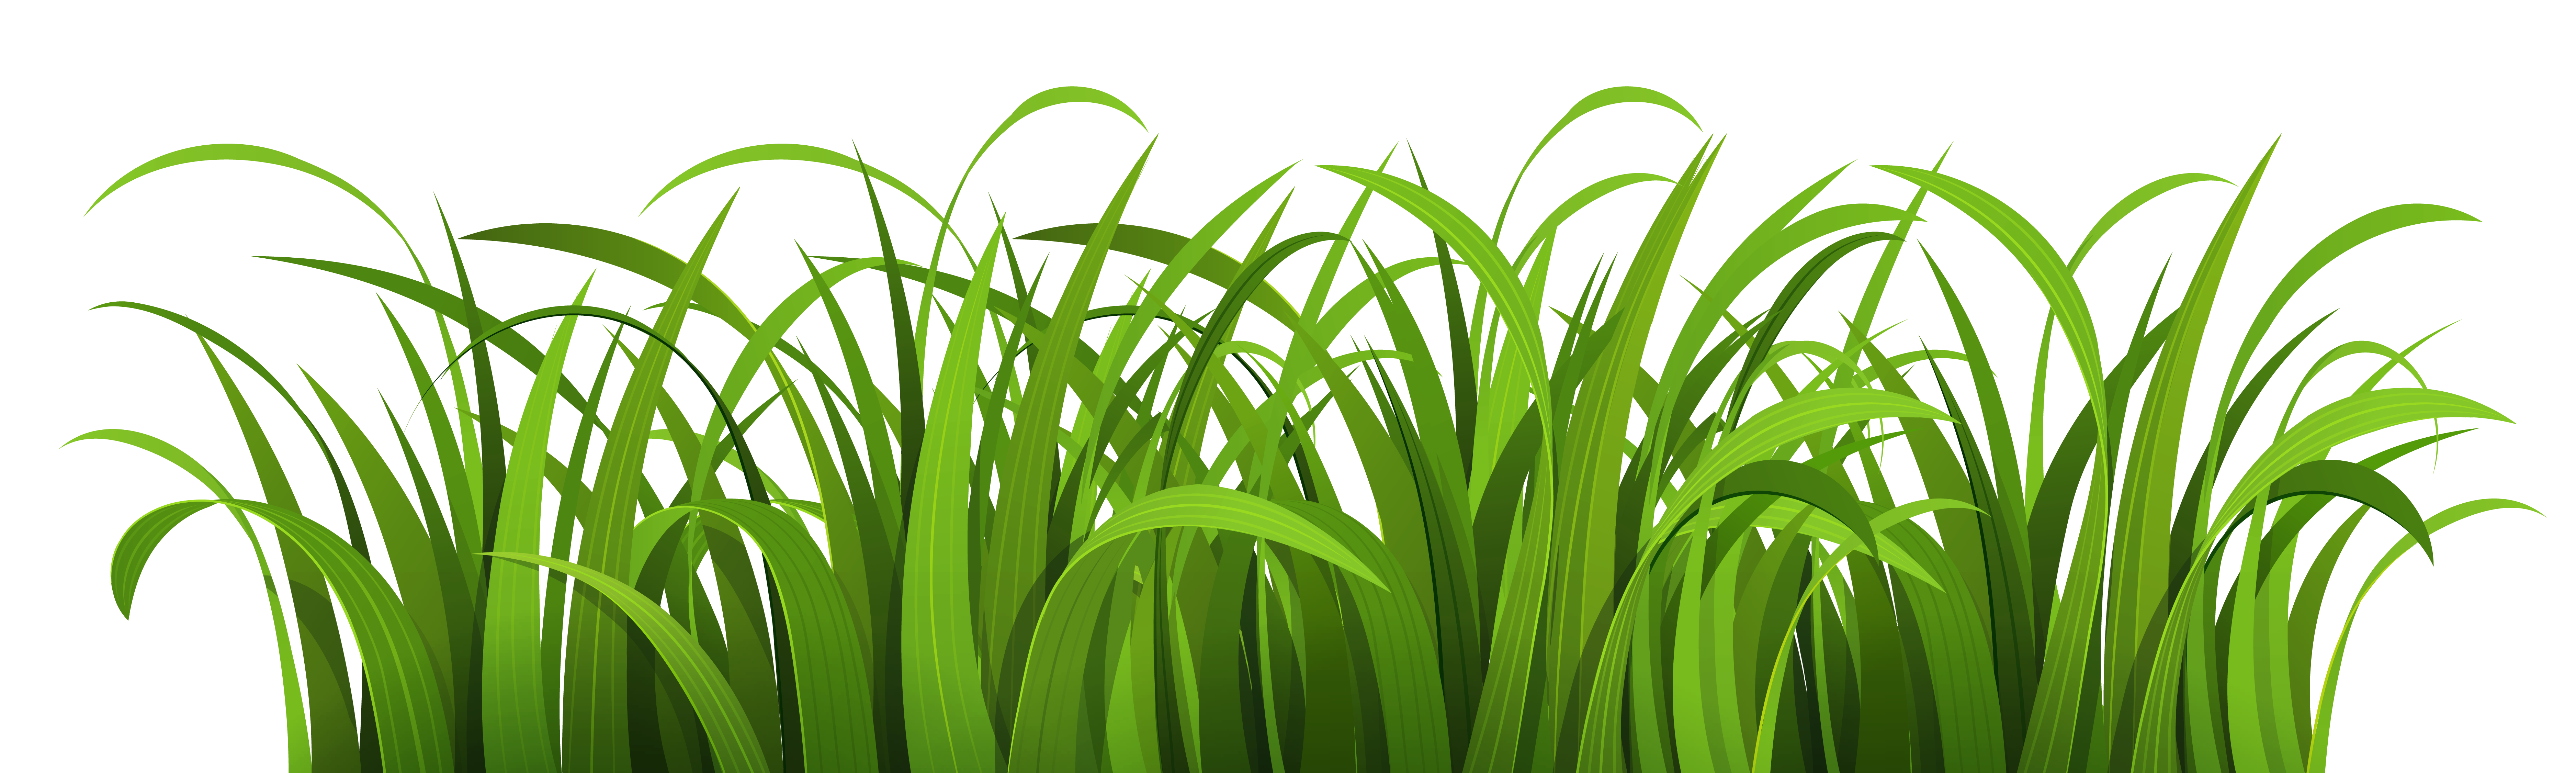 Grass clipart vector.